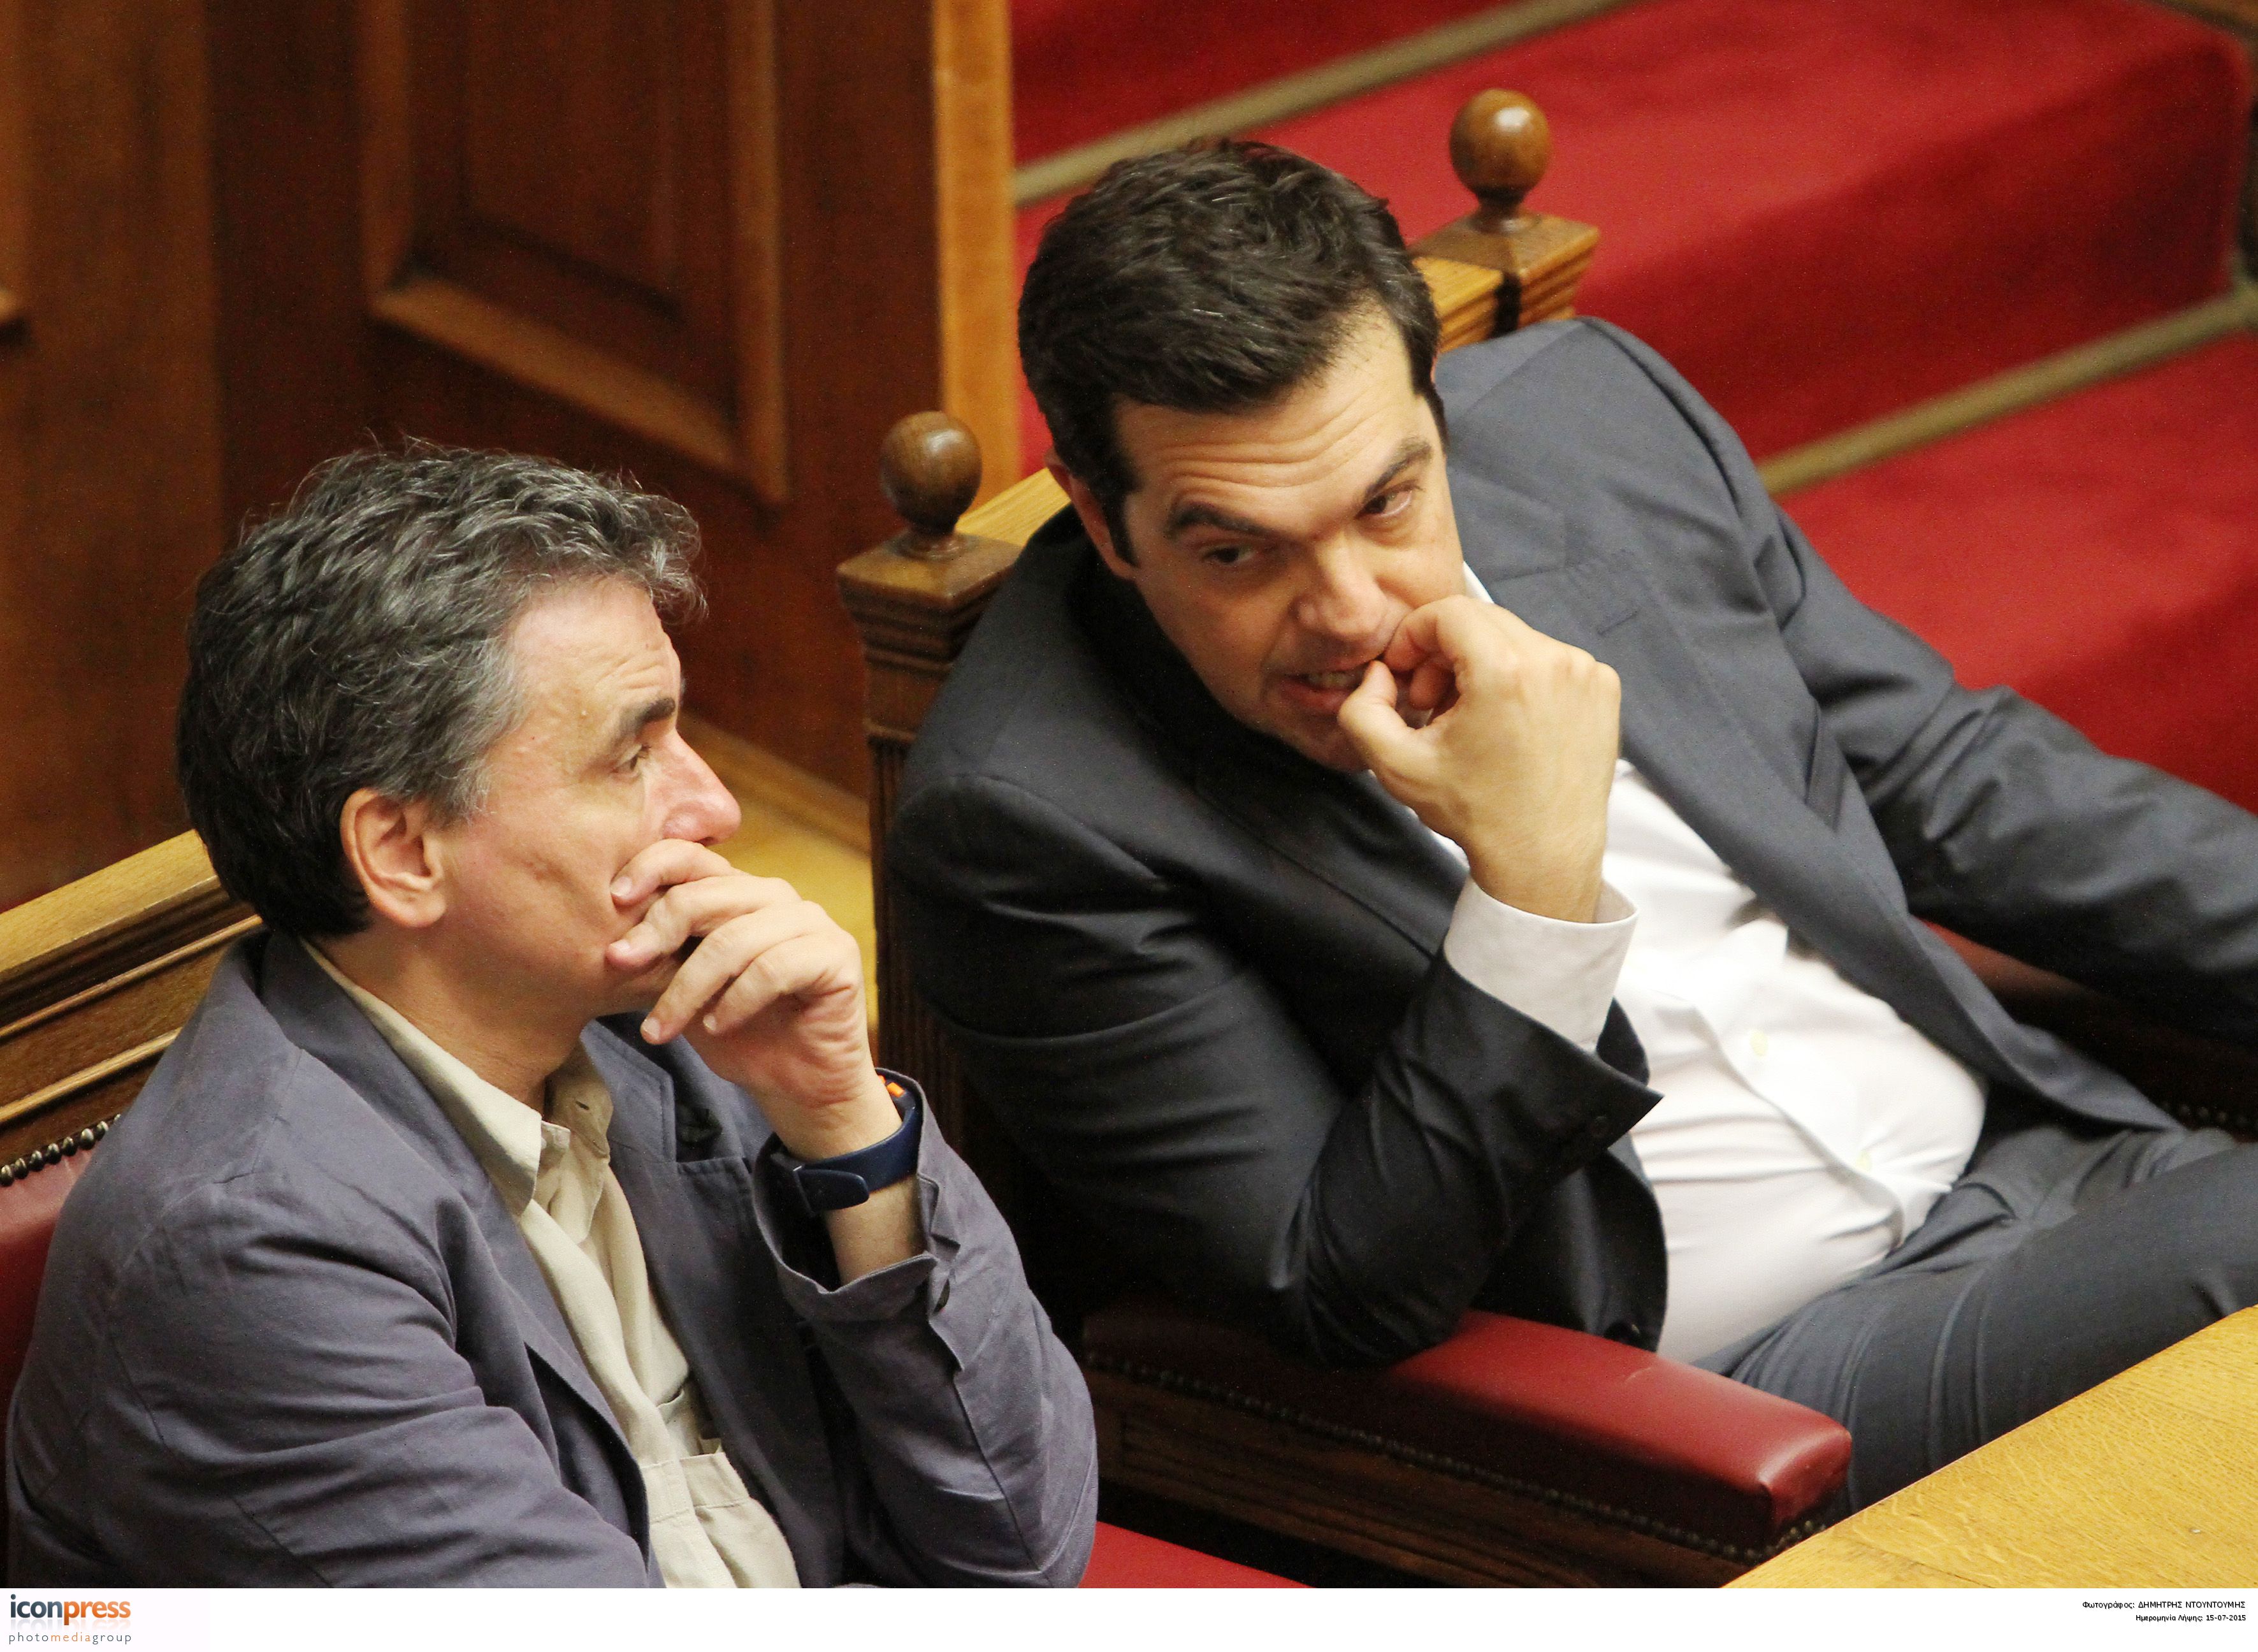 Μετά την επίσκεψη Μακρόν τα δύσκολα για την ελληνική κυβέρνηση